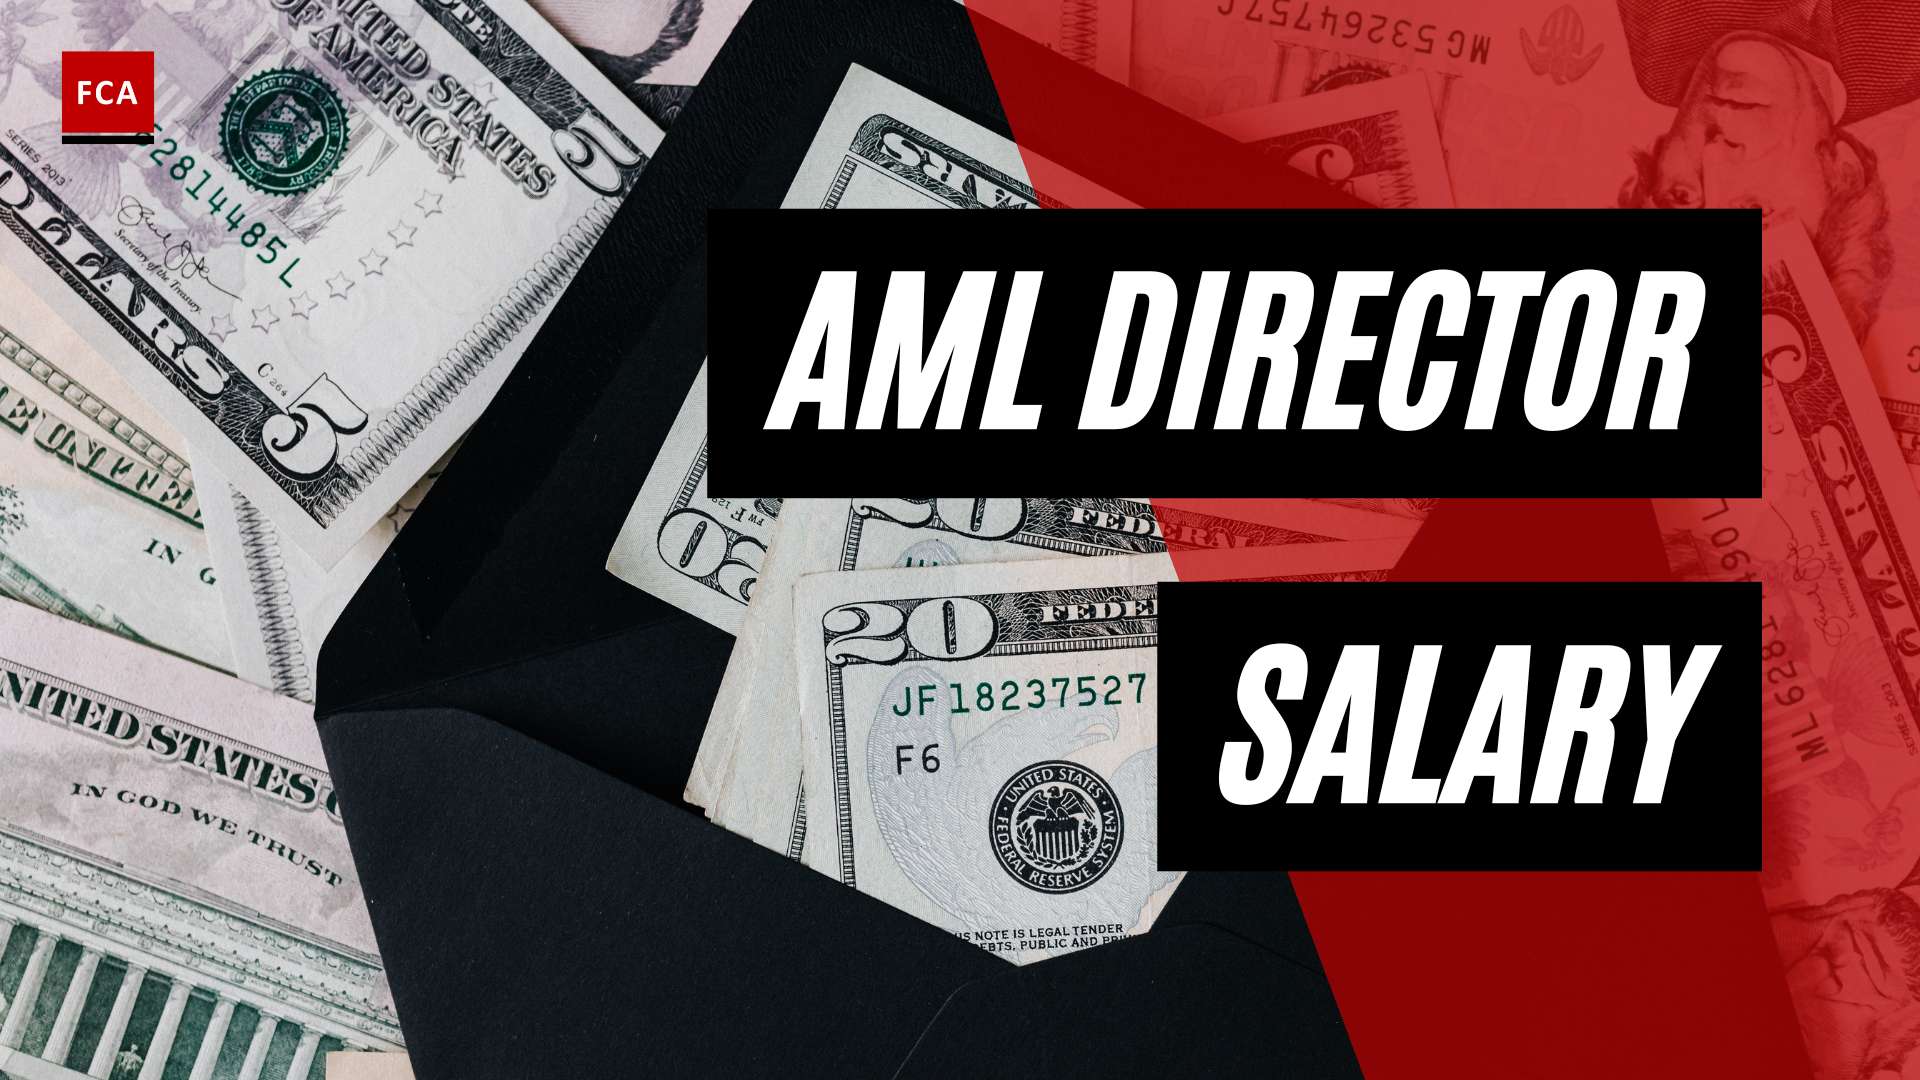 The Hidden Figures: Aml Director Salary Demystified